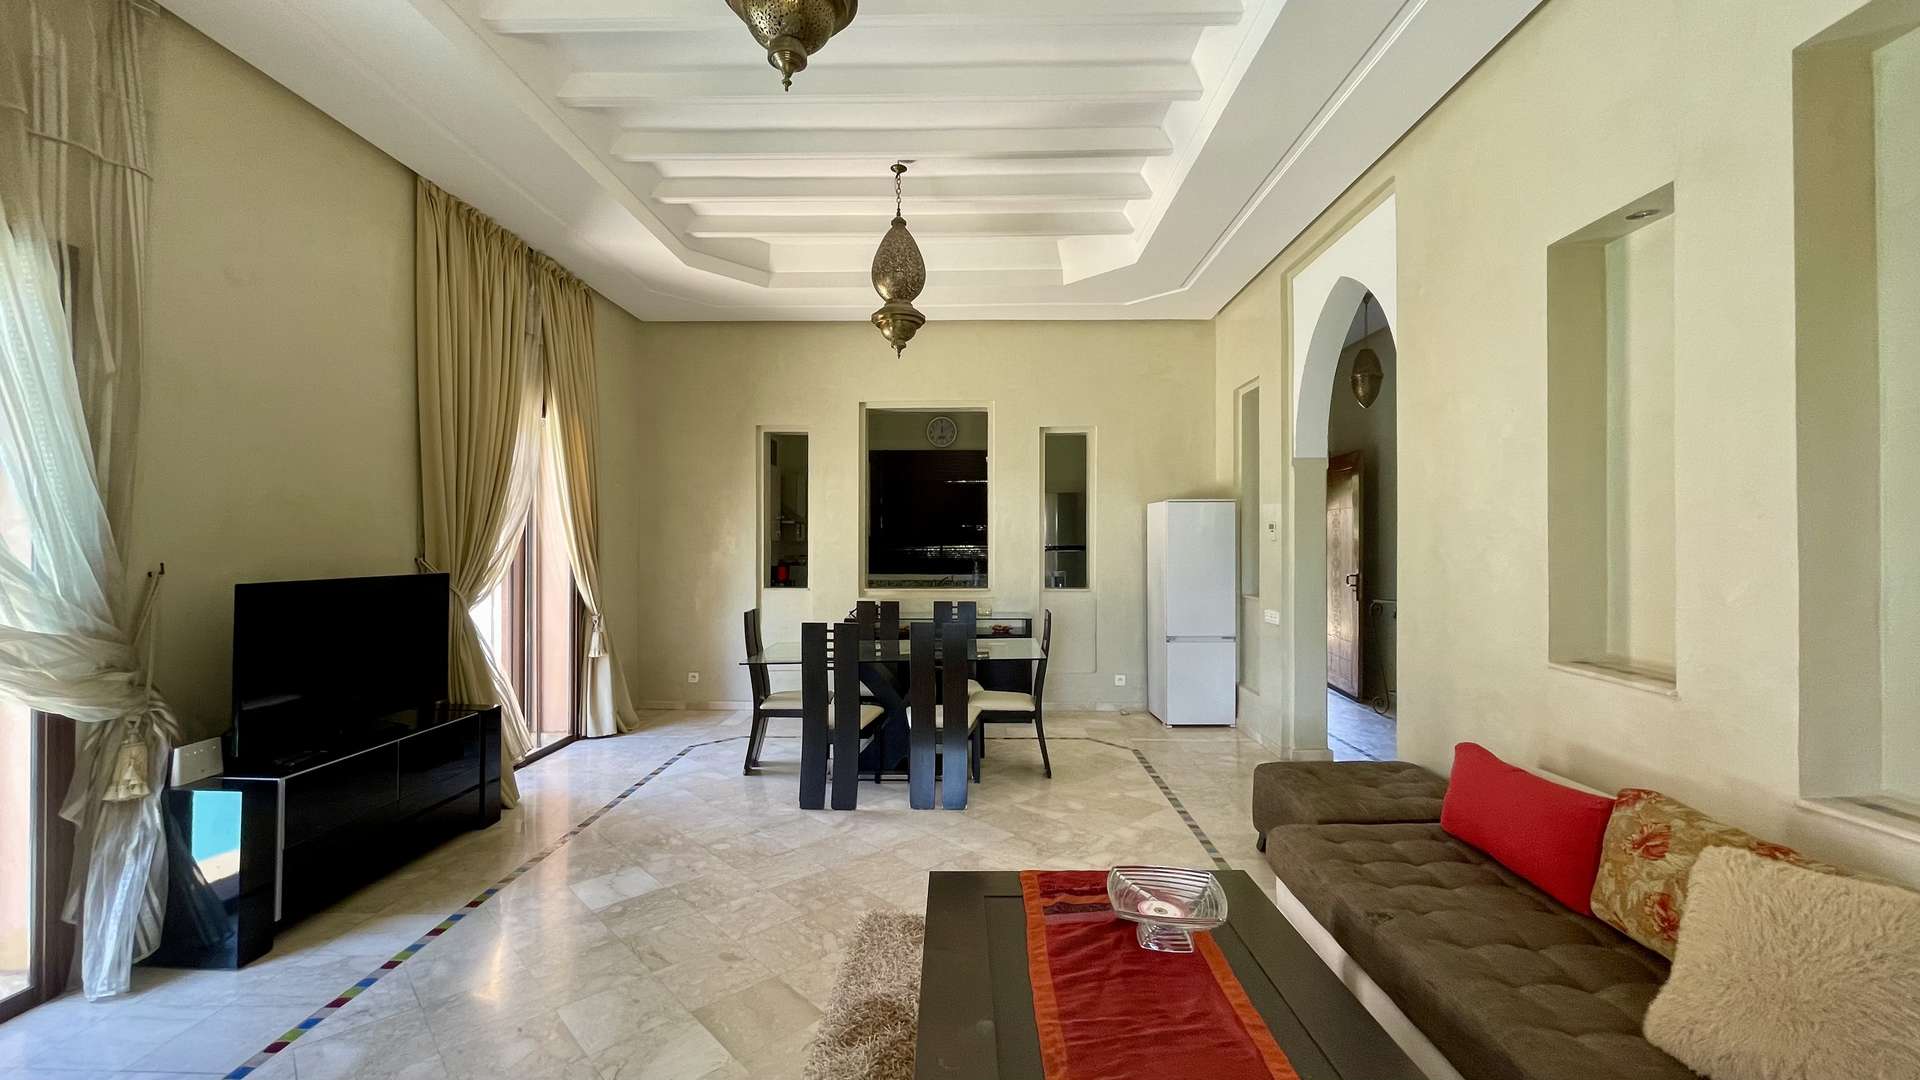 Vente,Villa,Villa mitoyenne 3 chambres à coucher de plain-pieds sur la route de Fès à 20 min. du centre,Marrakech,Route de Fès